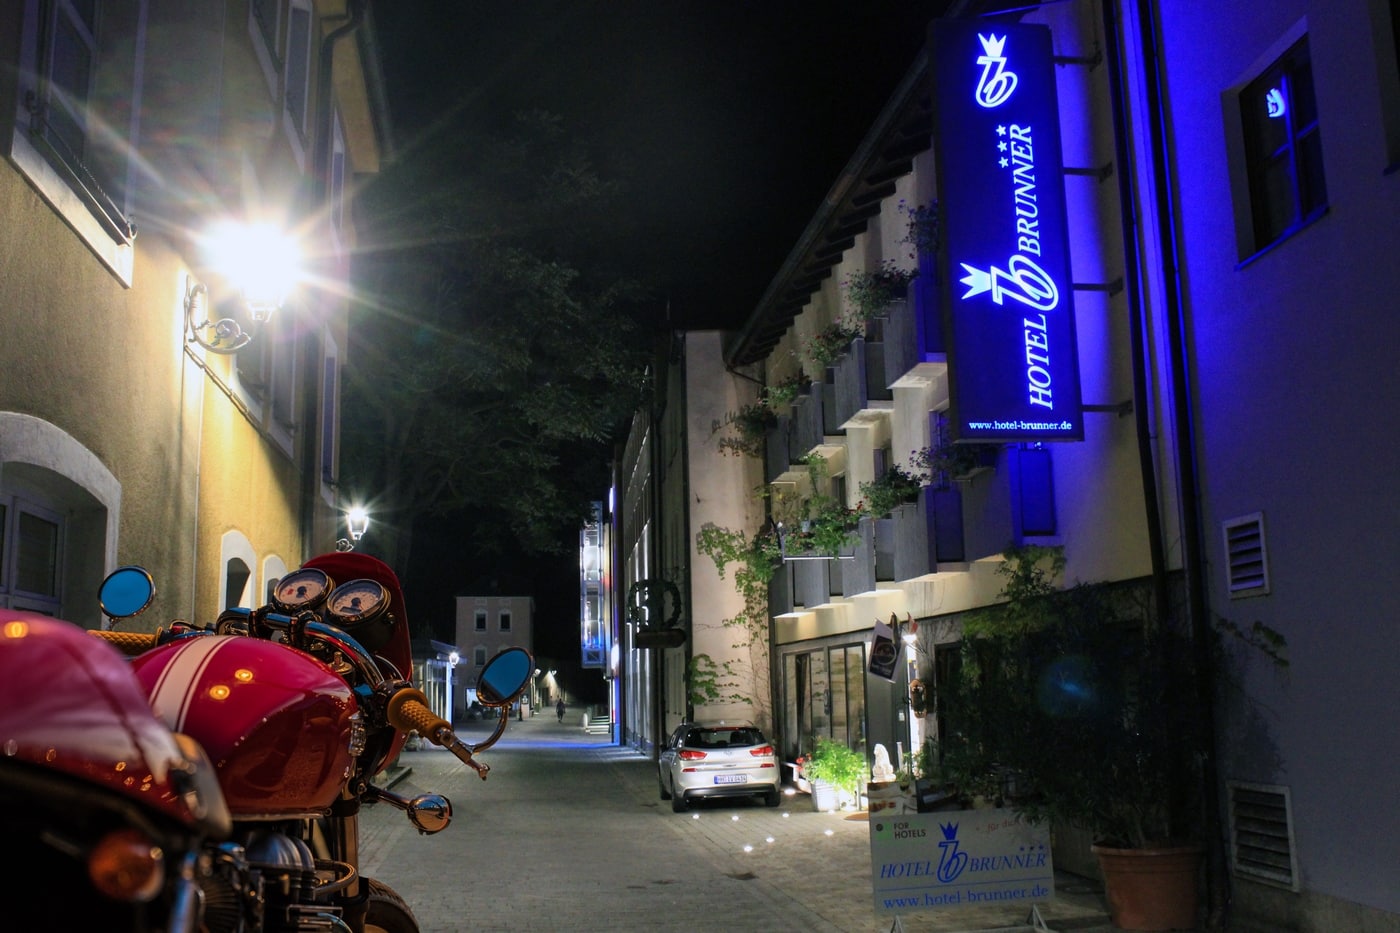 Motorradfahrer genießen im Hotel Brunner zahlreiche Vorteile.